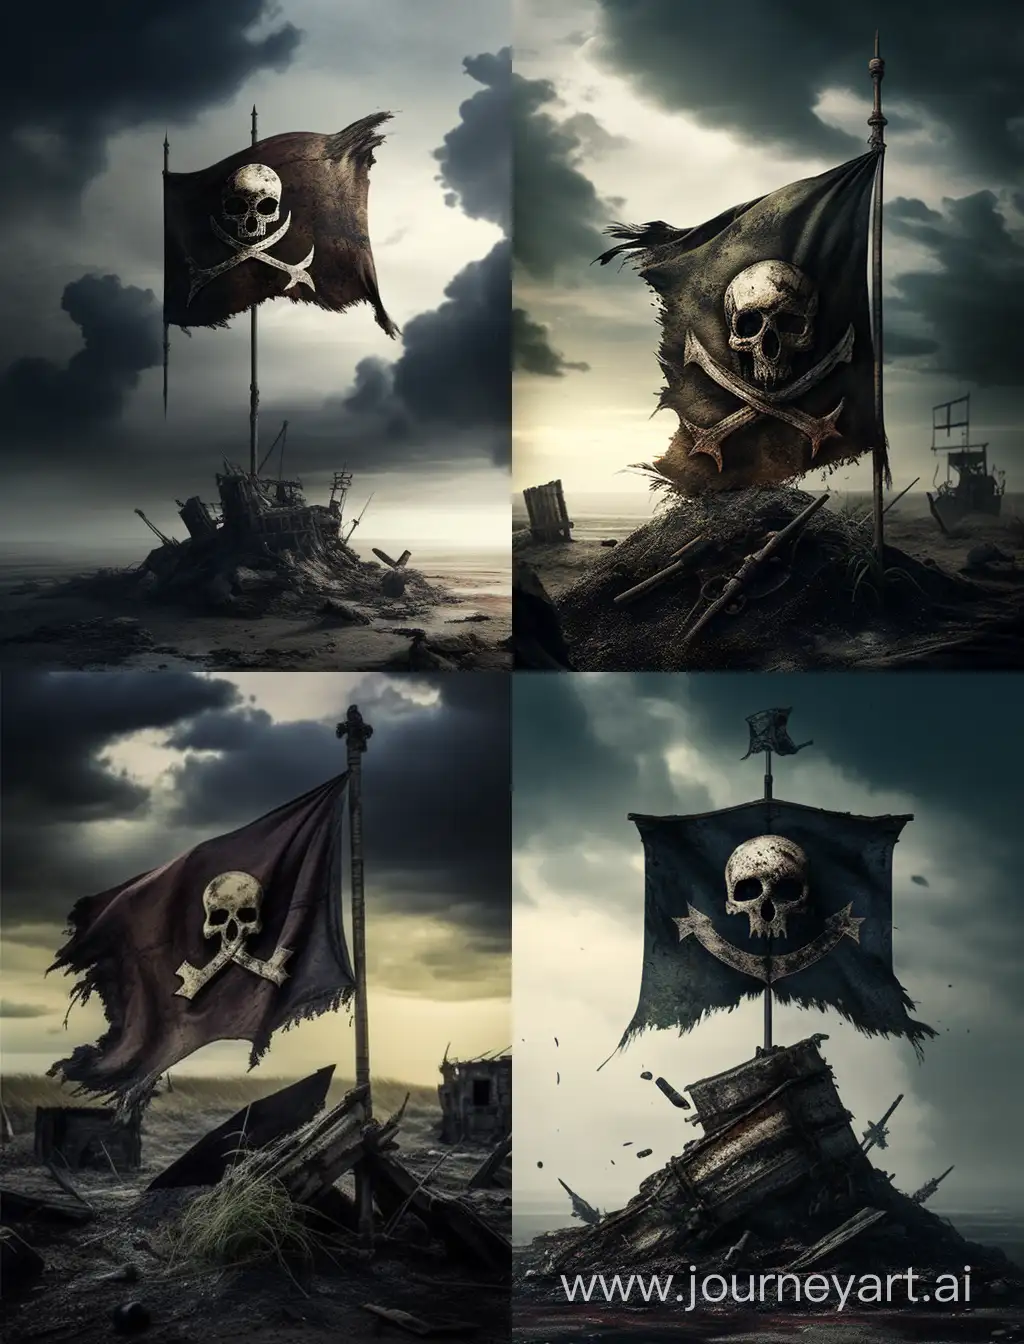 
un drapeau pirate usé qui flotte dans un ciel post apocalyptique
